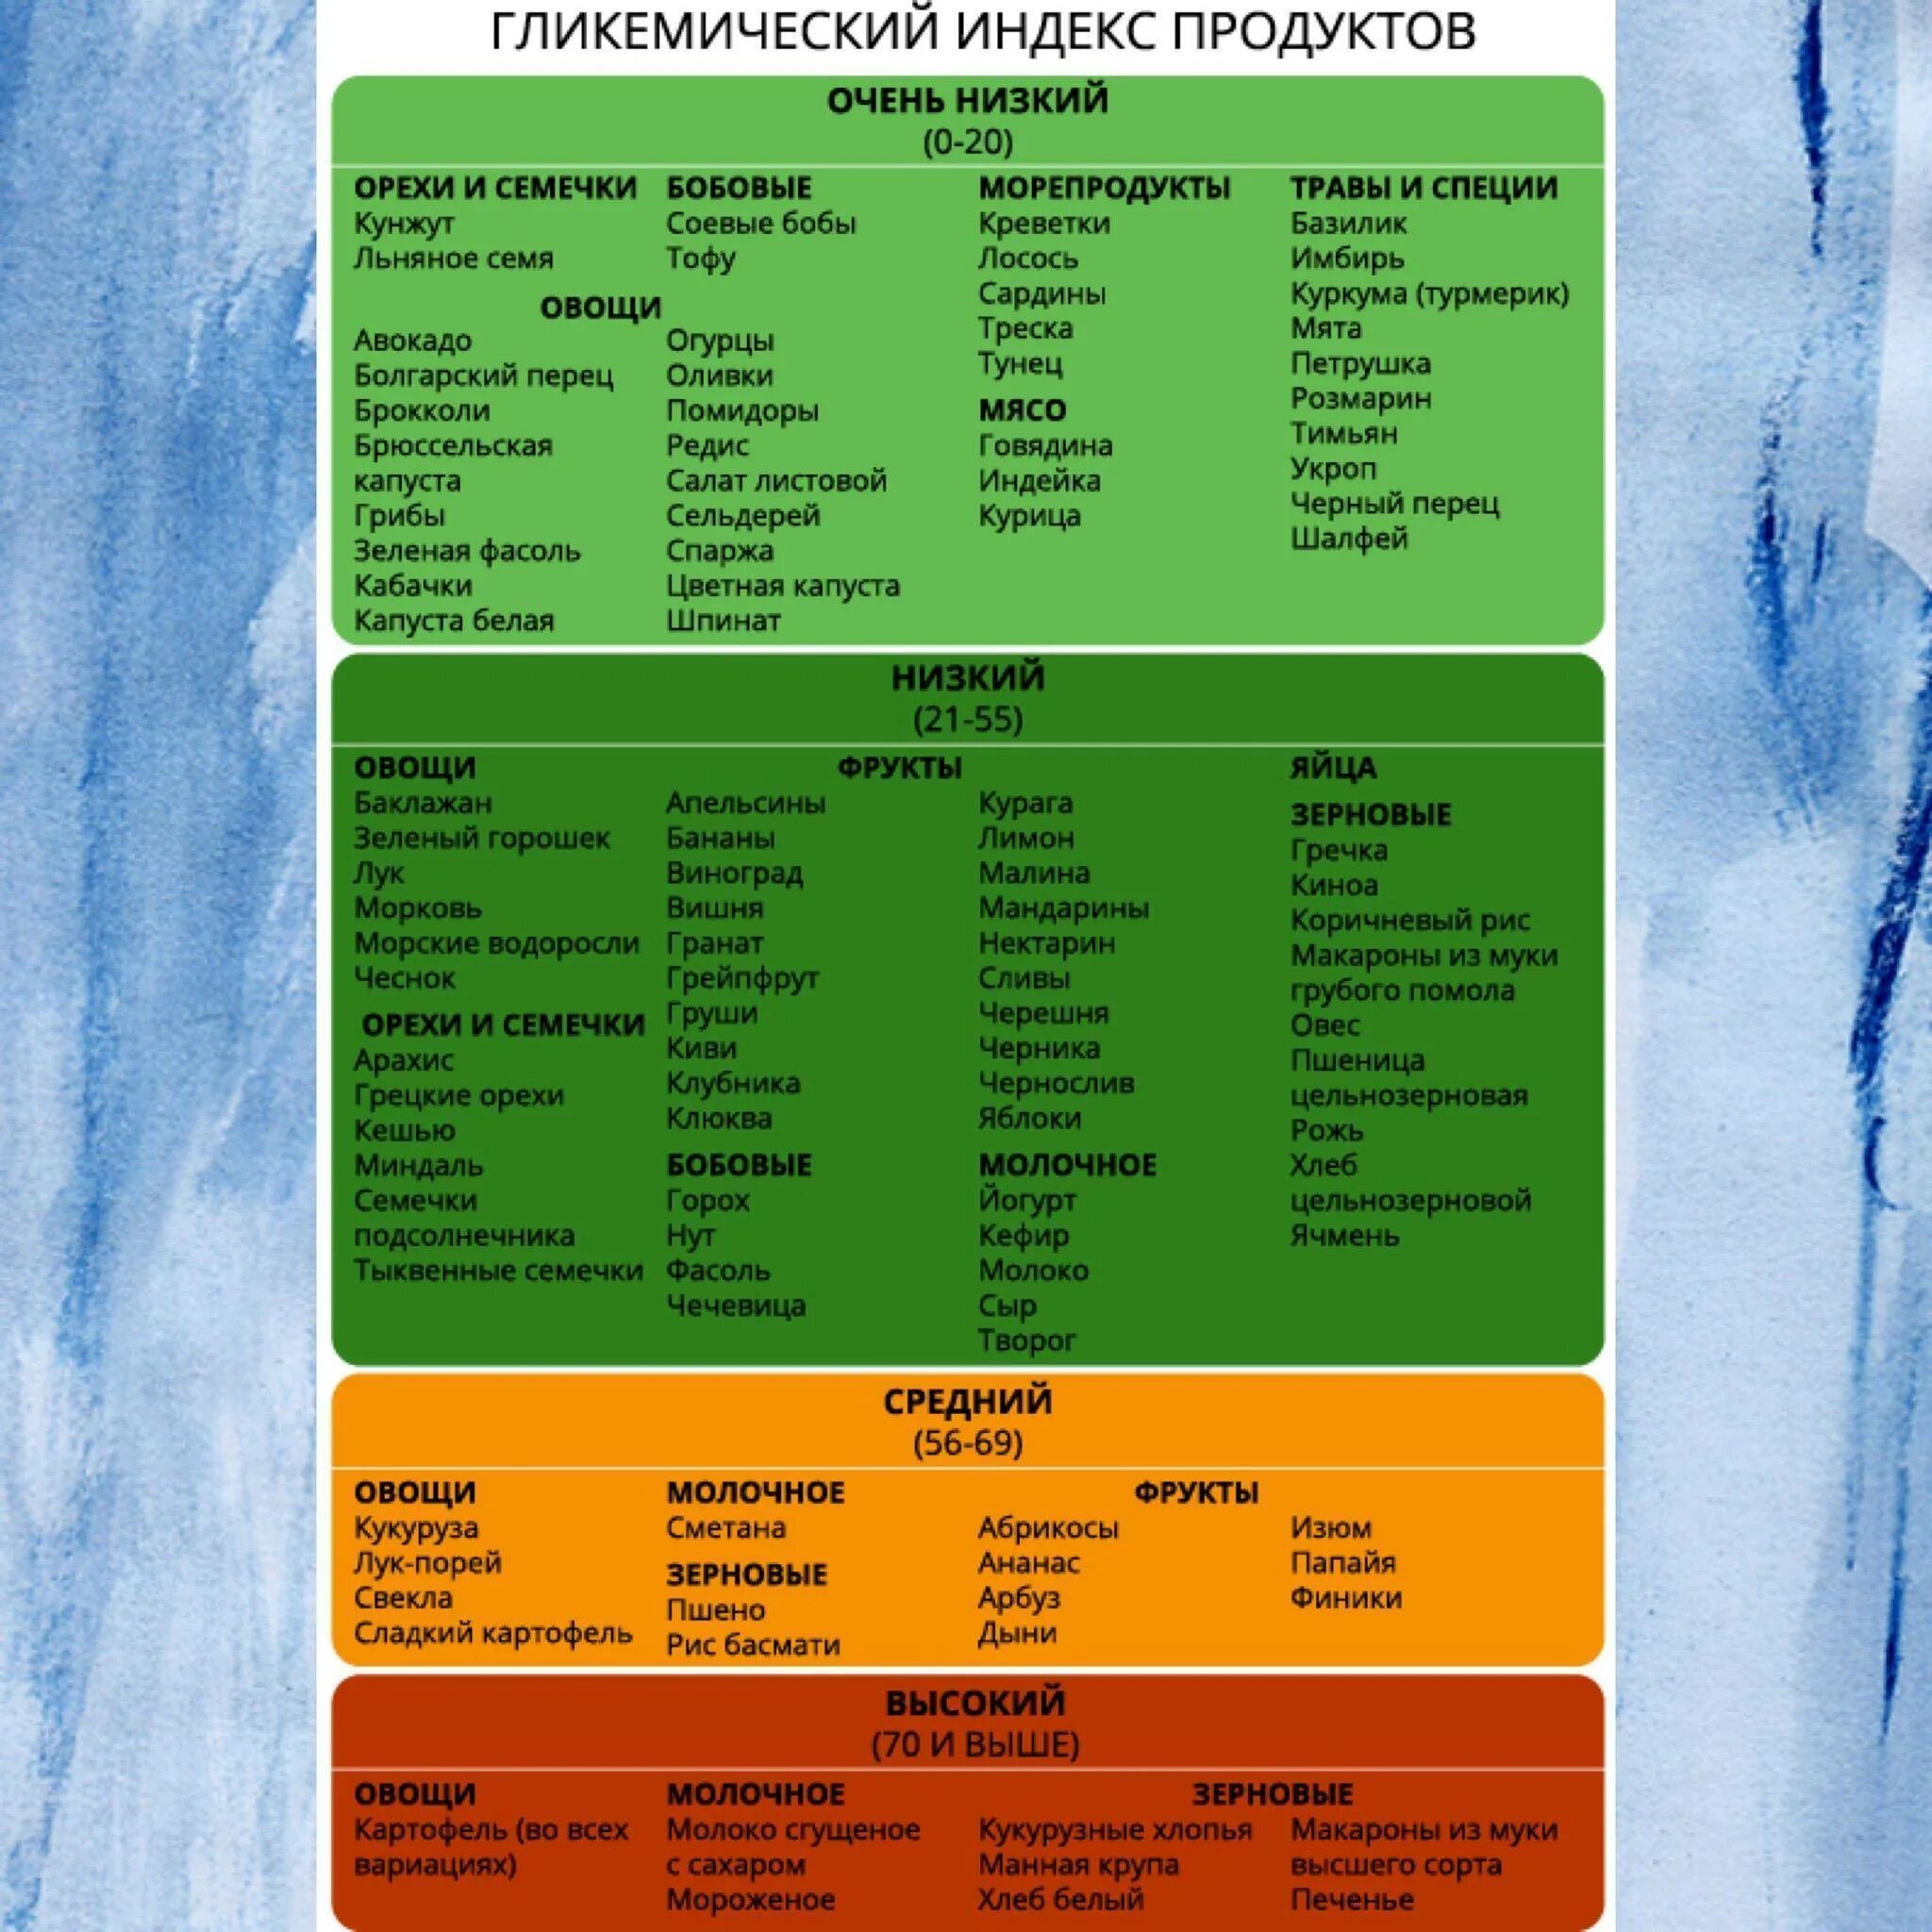 Гликемическая таблица продуктов похудения